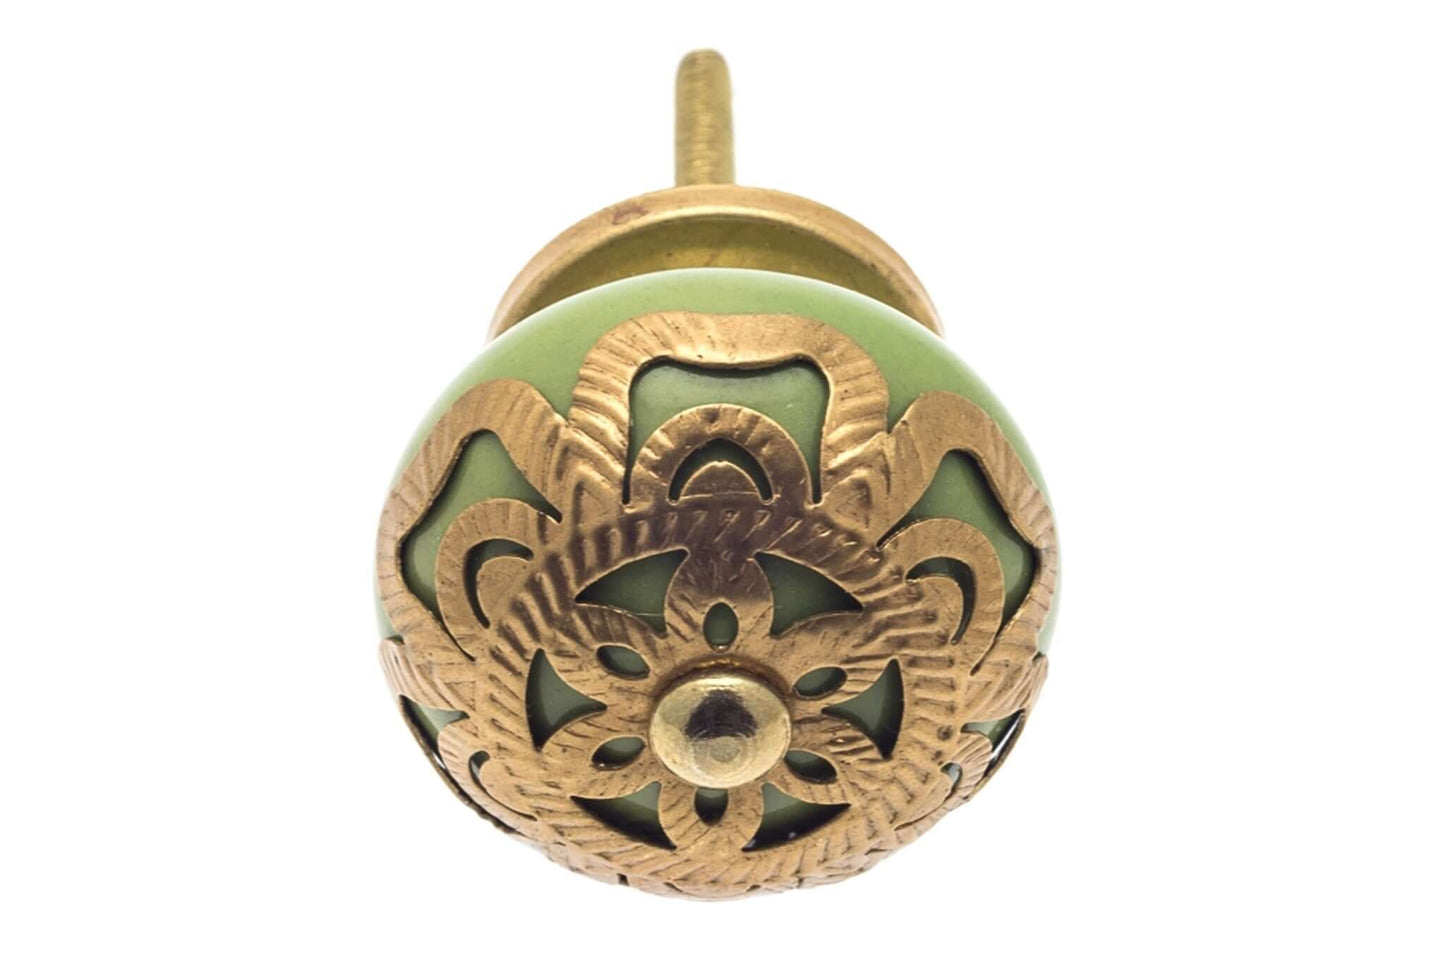 Round Ceramic Knob Green with Brass Fretwork Surround